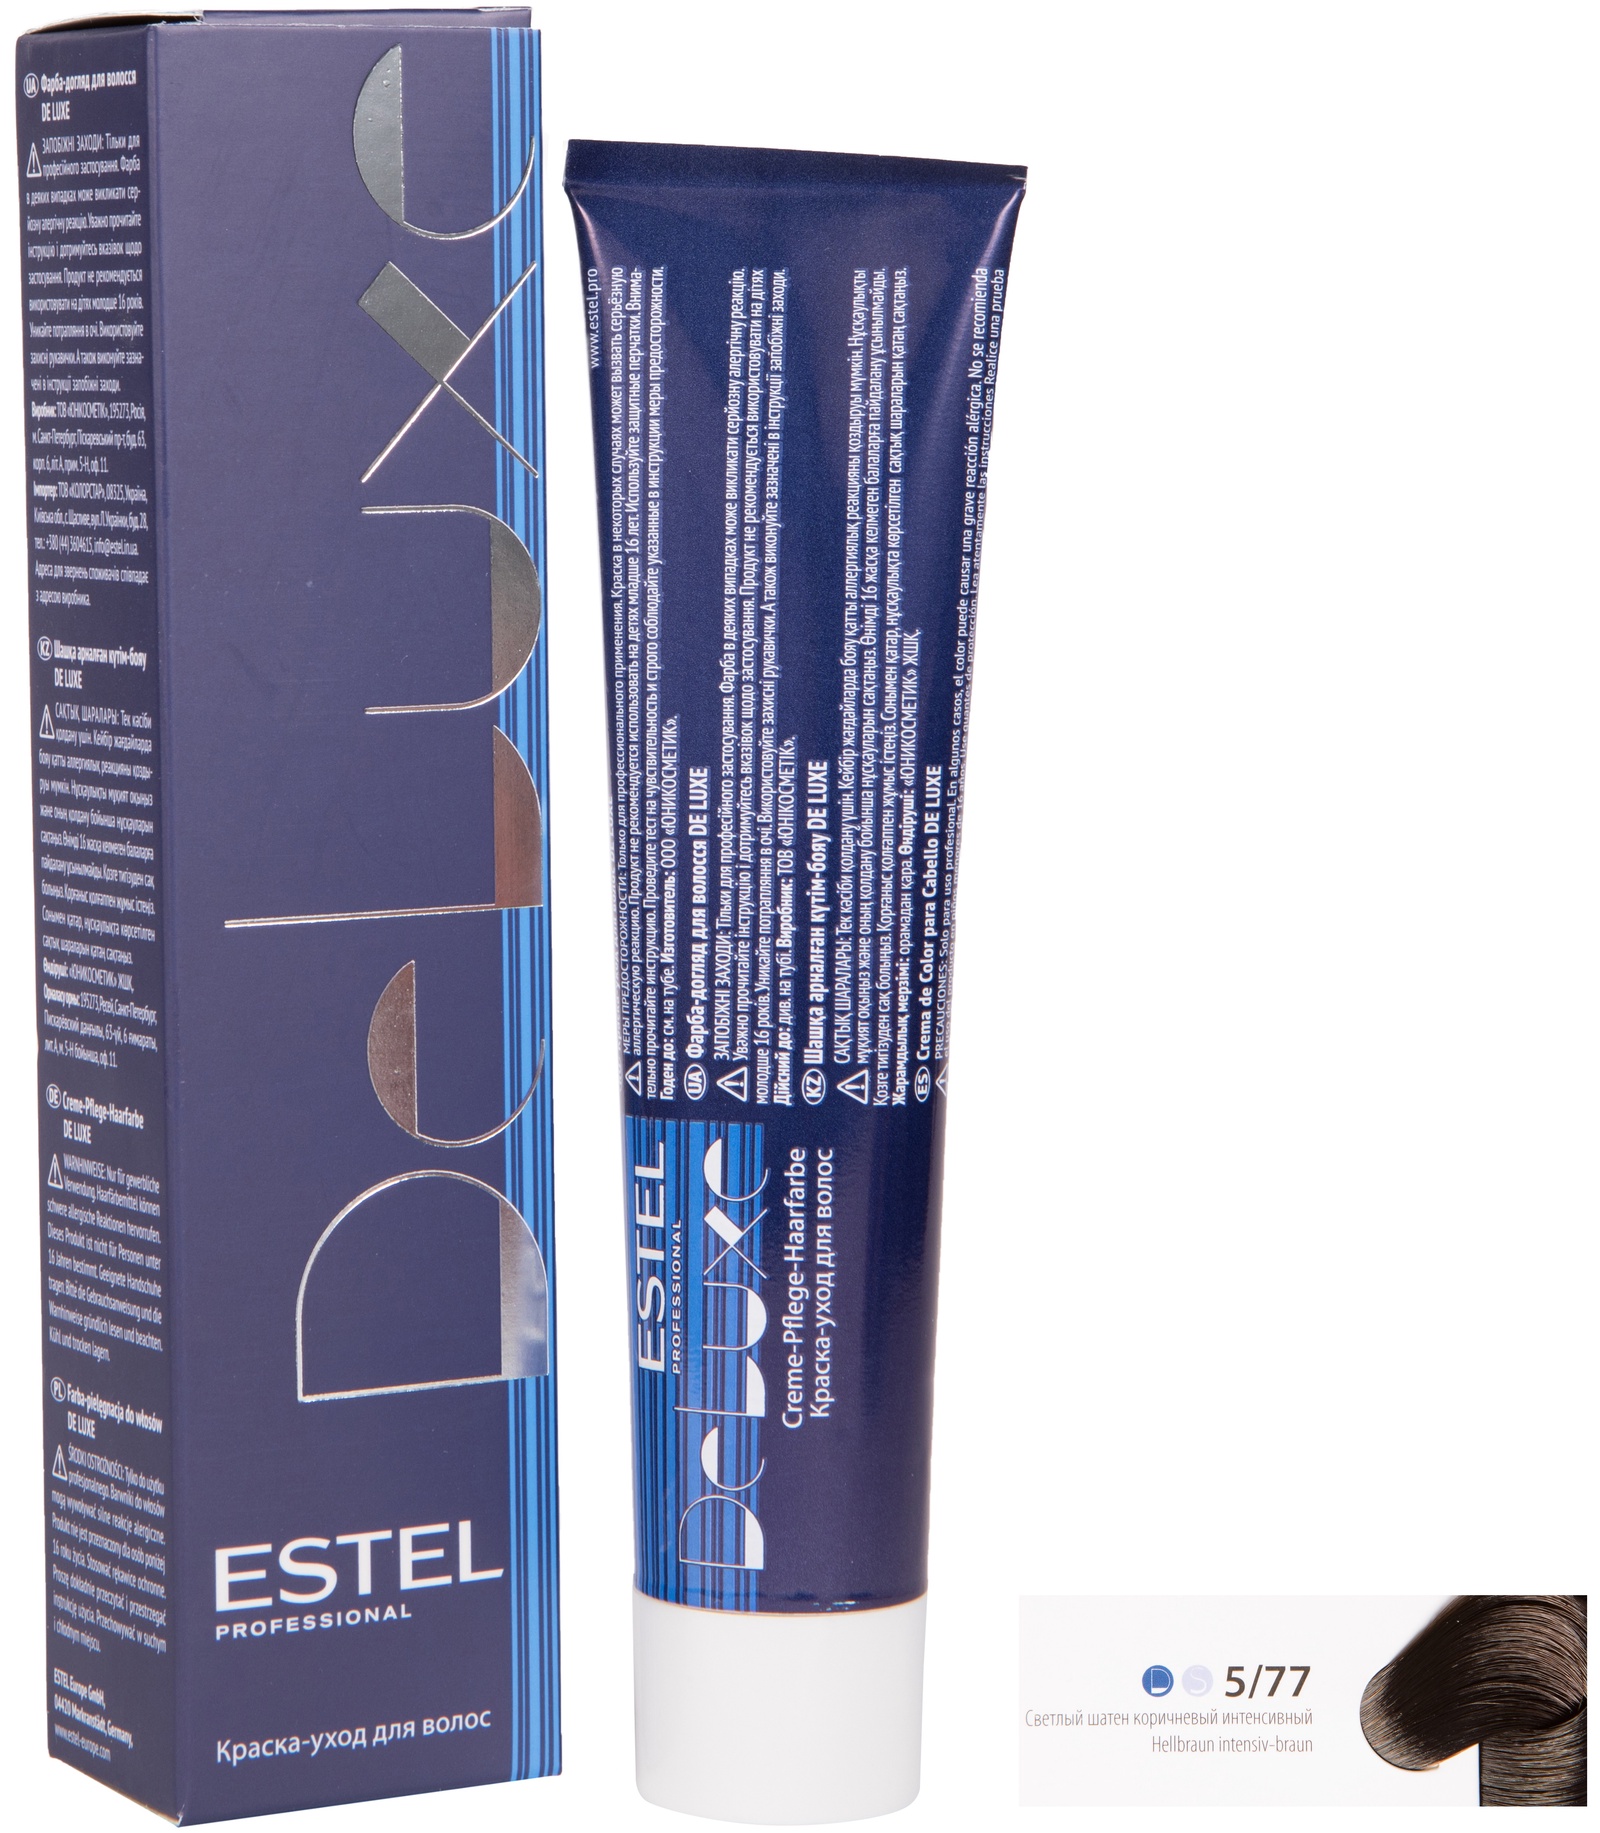 Краска для волос ESTEL PROFESSIONAL 5/77 DE LUXE краска-уход для окрашивания волос, светлый шатен коричневый интенсивный 60 мл